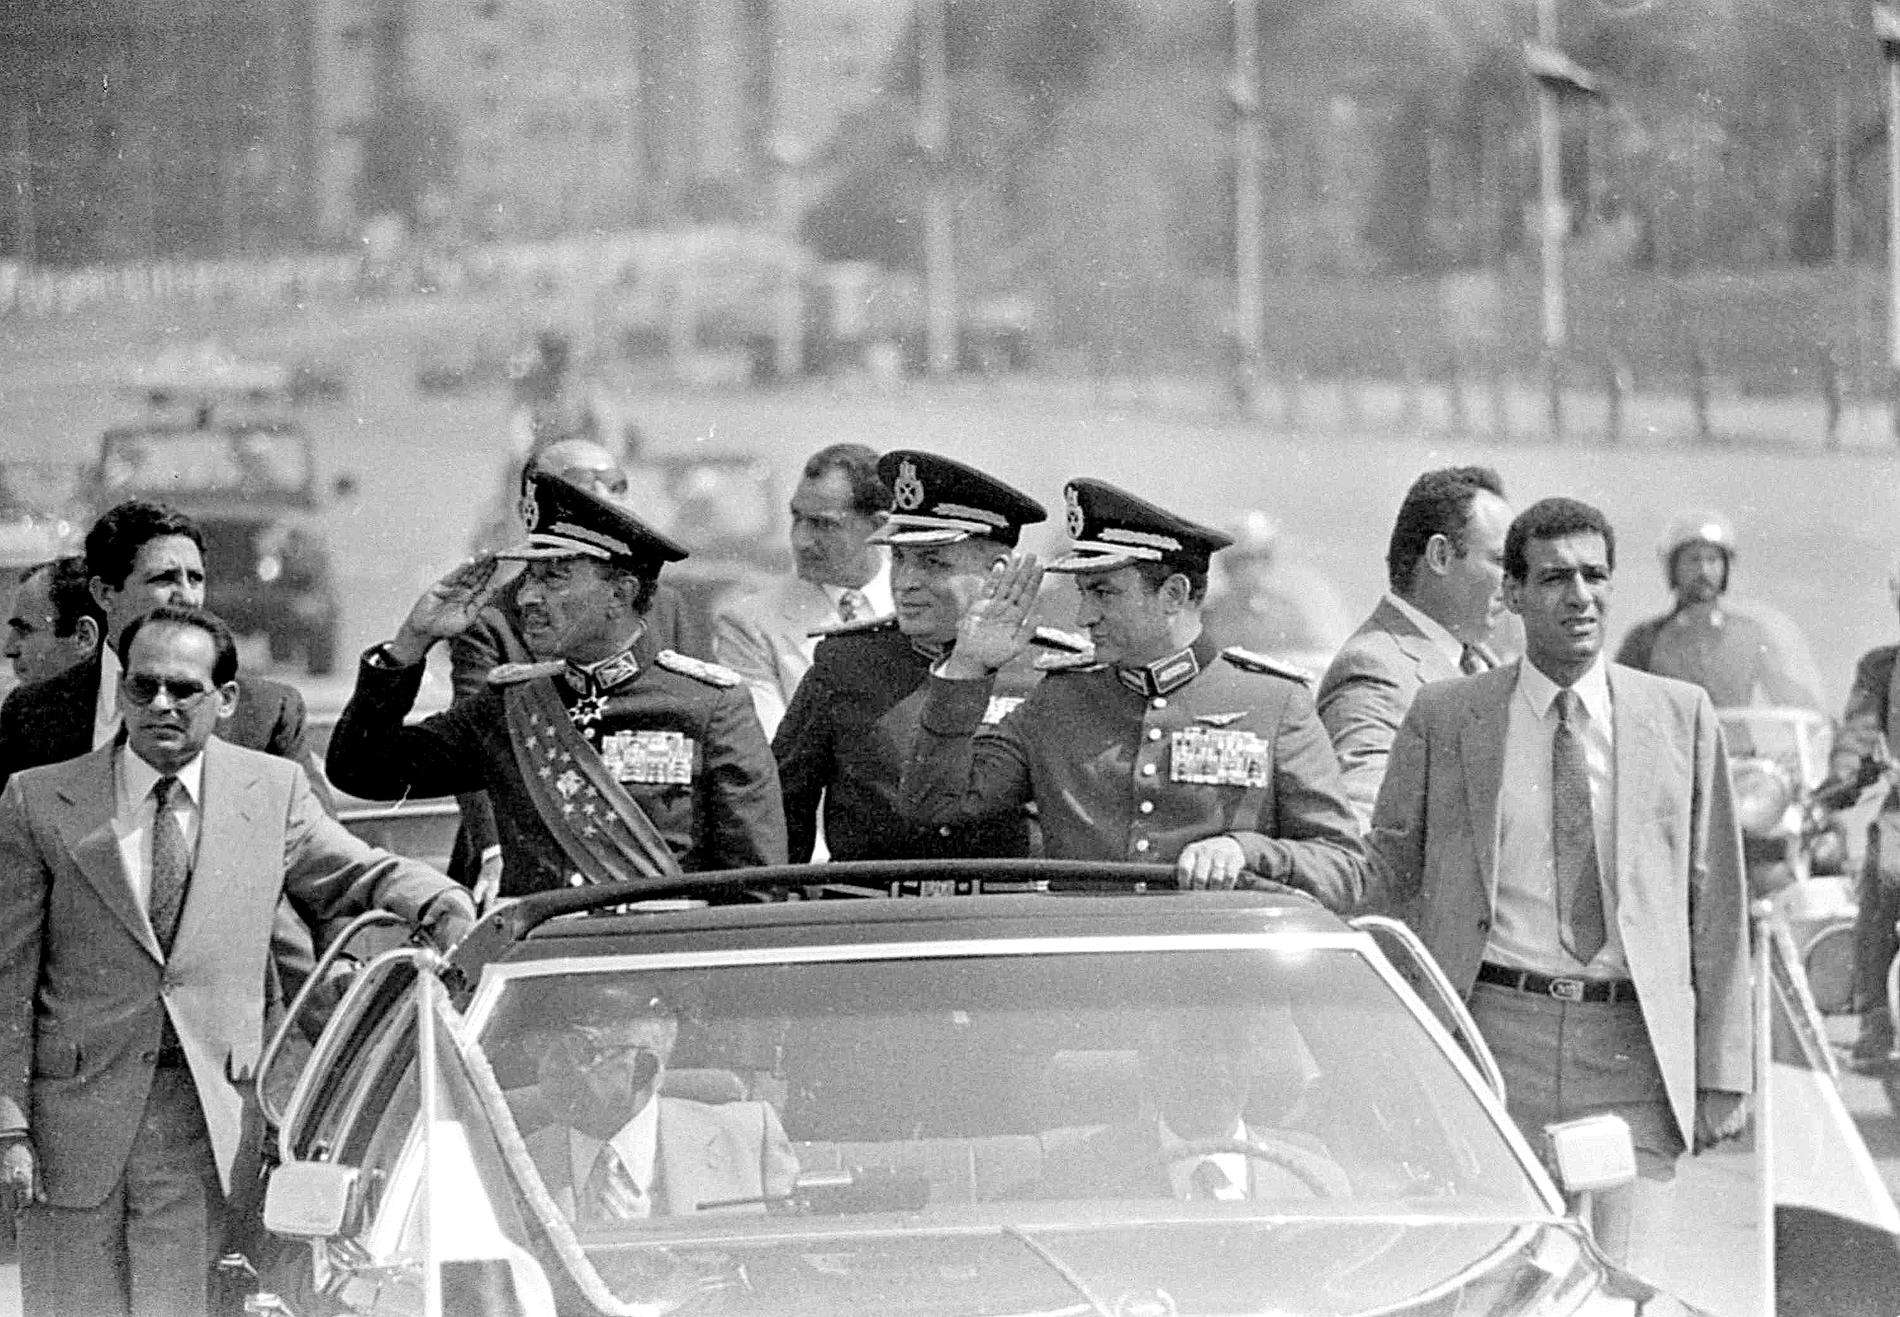 Kort efter att den här bilden togs mördades den sittande presidenten Anwar Sadat (till vänster i bilen). Hosni Mubarak, då vicepresident, skadades i dådet och tog över en vecka senare. Arkivbild.